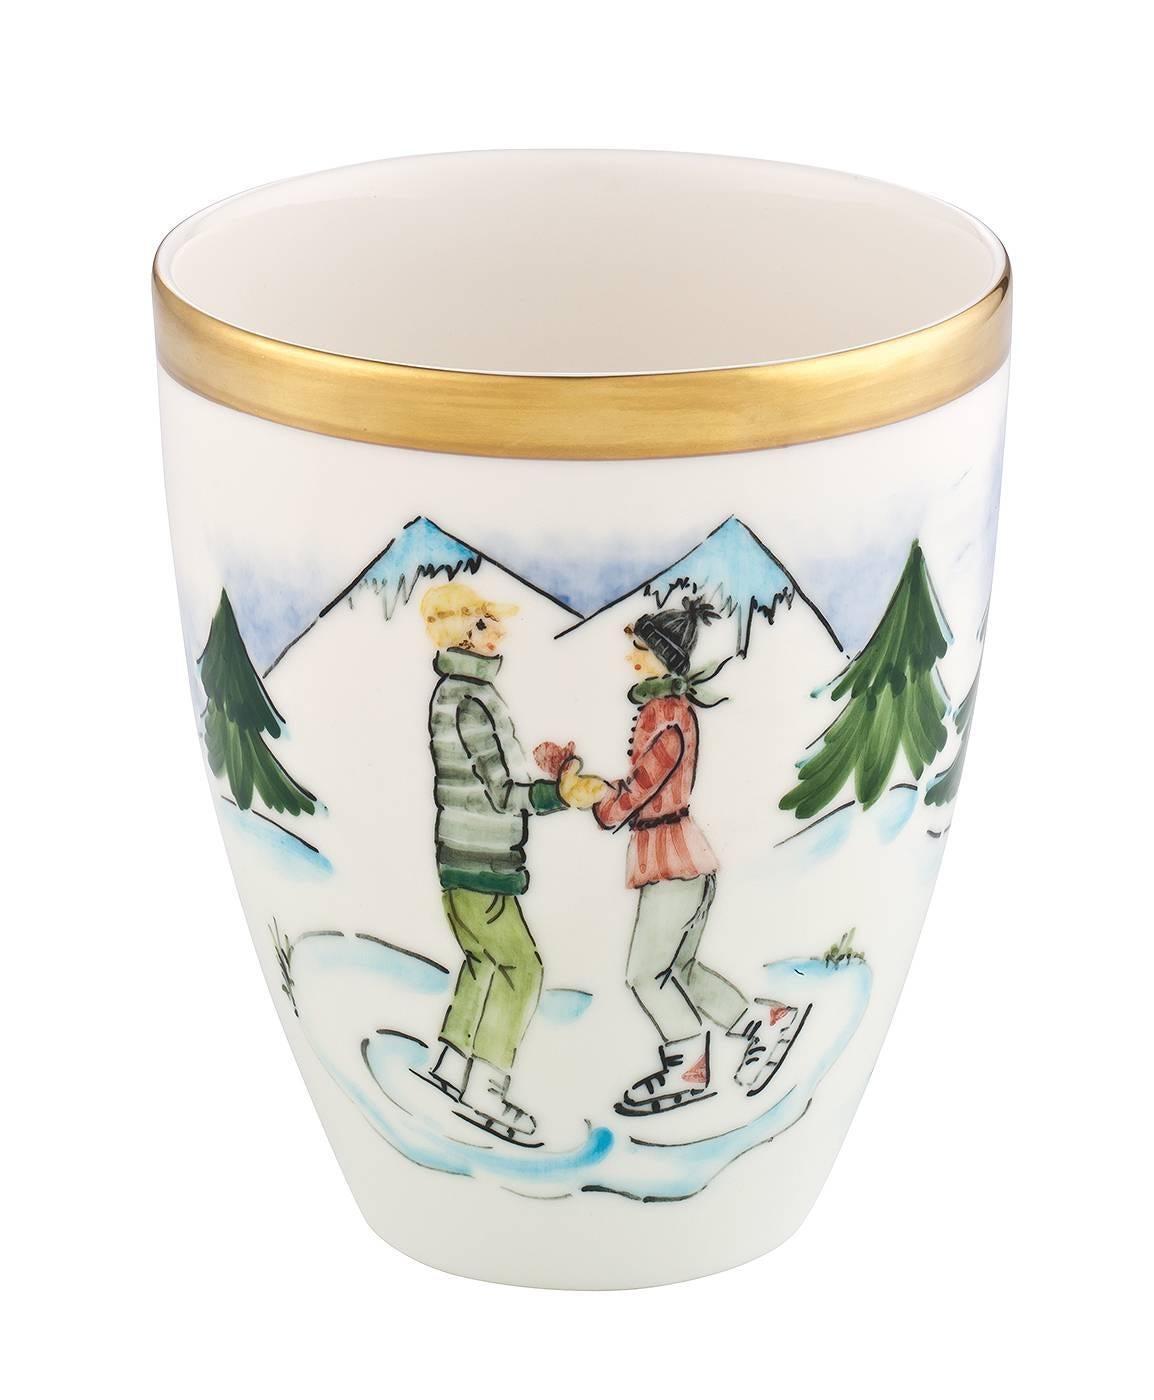 Diese komplett handgefertigten Porzellanvasen mit einem freihändig gemalten Skifahrerdekor werden als Viererset geliefert. Handbemalt in einem nostalgischen Design mit Mädchen, Junge, Schlittschuhläufer und Schlittschuhläuferin rundherum. Bäume und